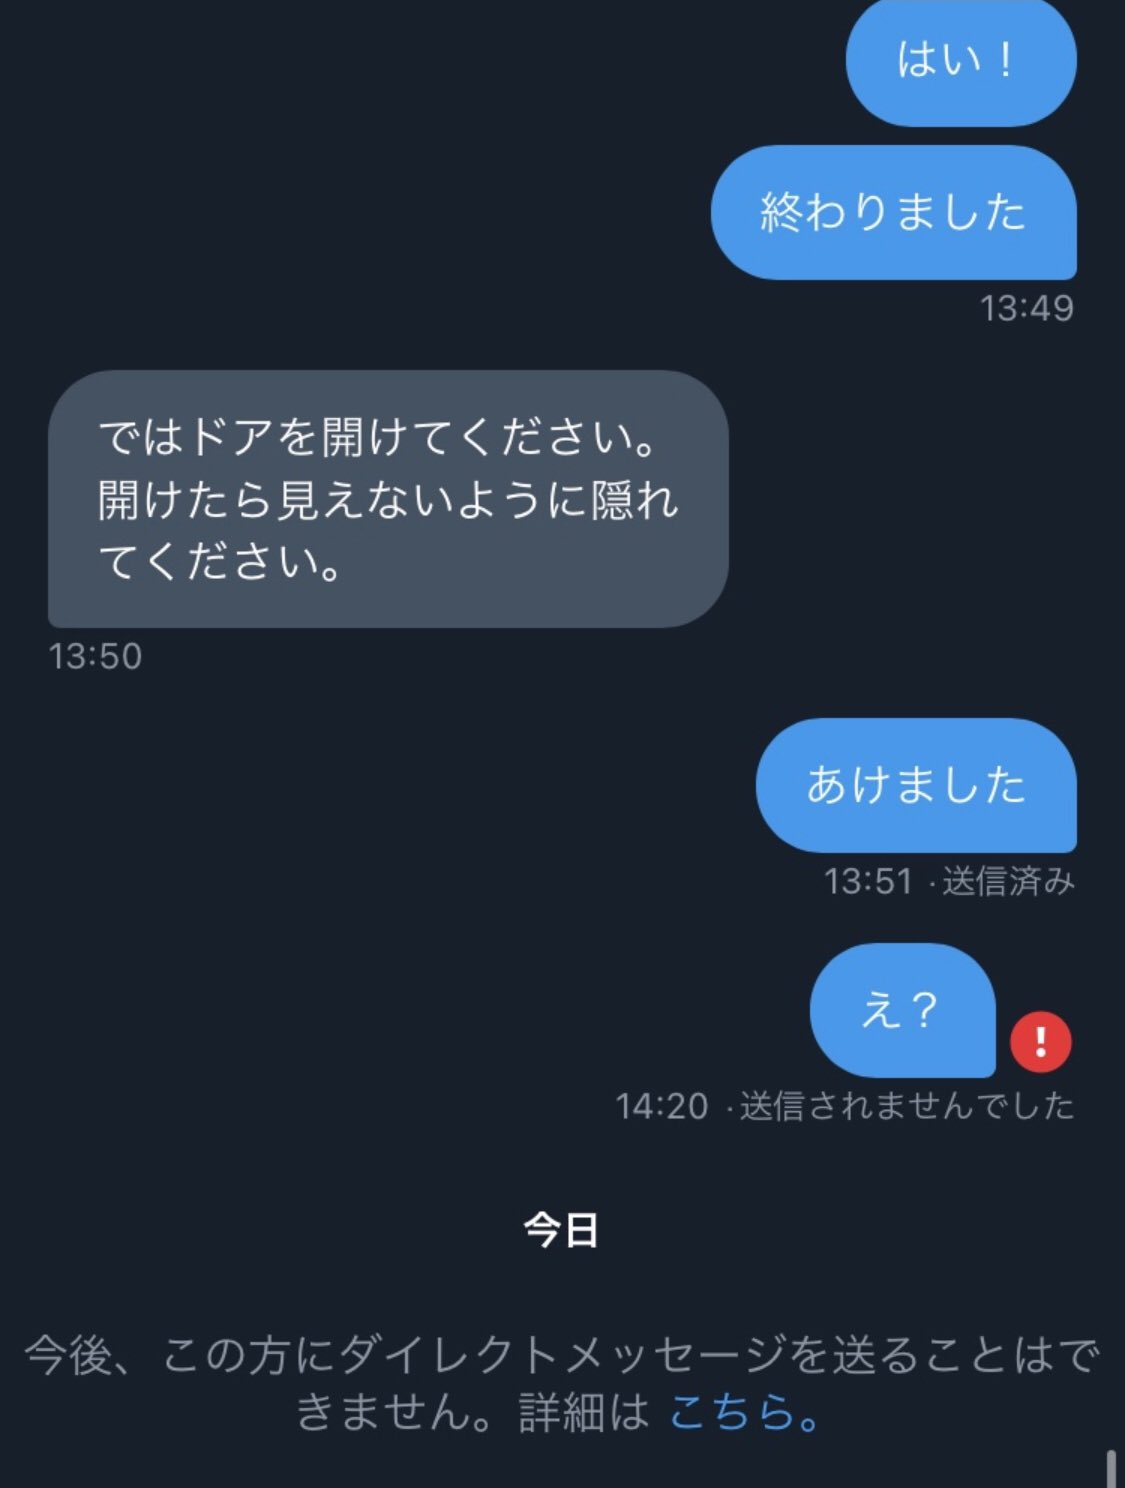 ひろし (@hirohiro20_20) / Twitter